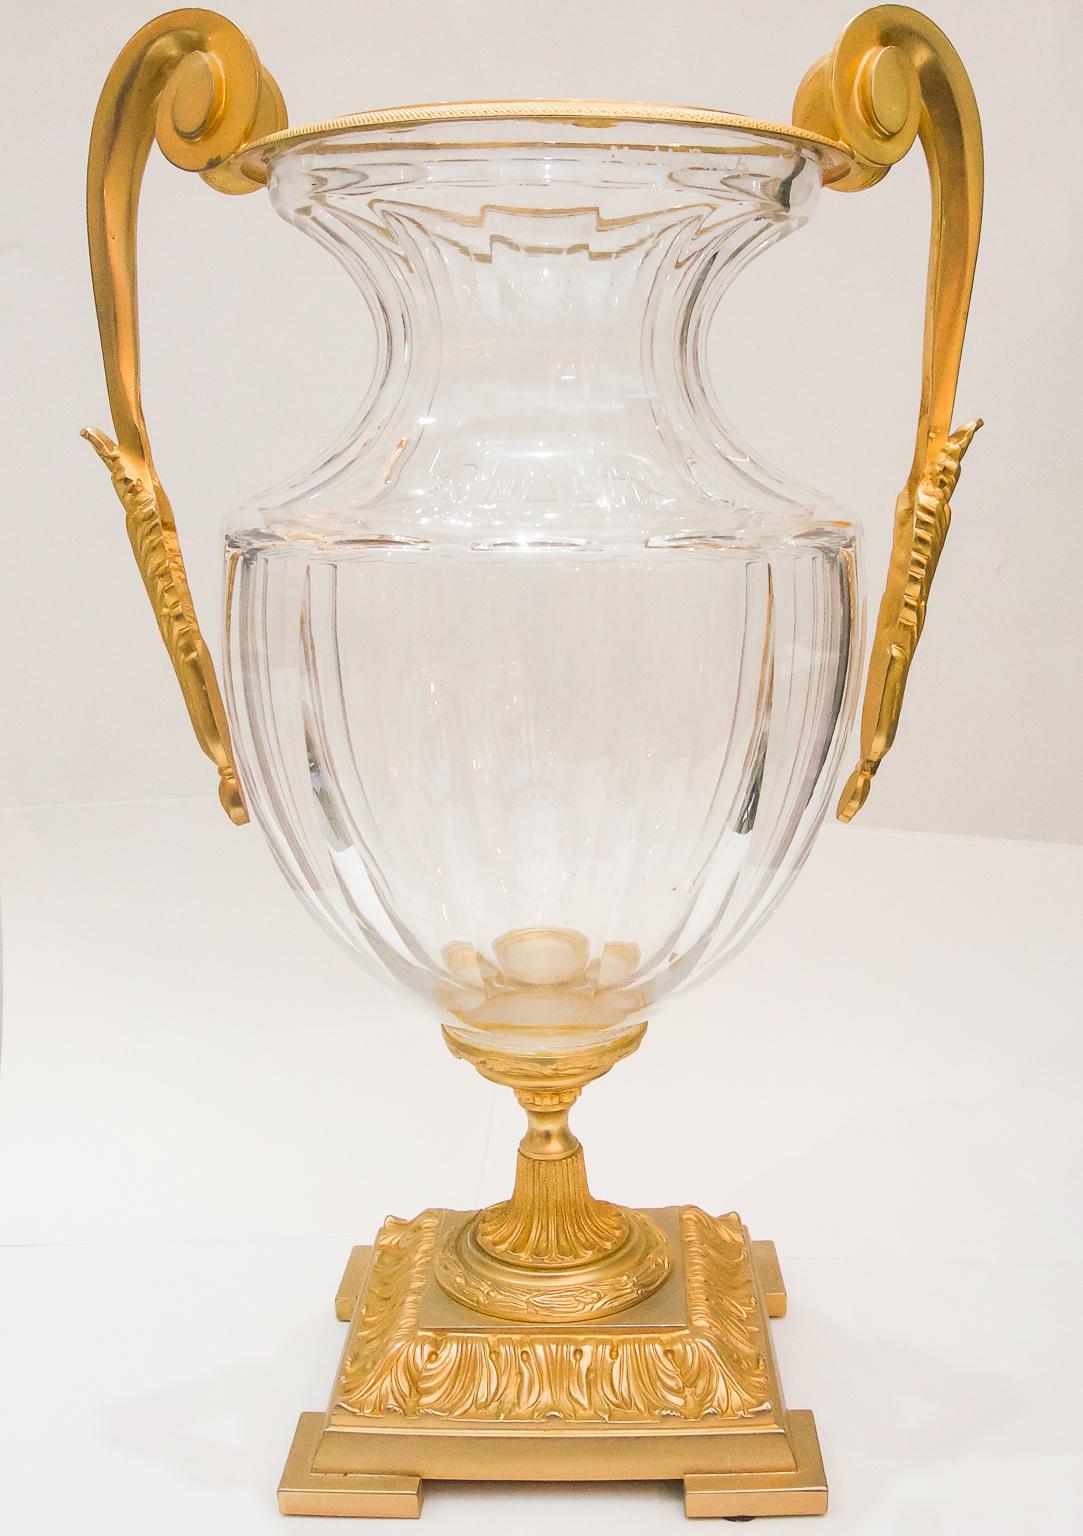 Diese stilvolle Vase aus Frnech-Kristall und Bronze im Louis-XVI-Stil stammt aus den 1960er Jahren und wurde von Martin Benito für Cristal Freres entworfen.

Hinweis: Geätzte Signatur Martin Benito, Cristal Freres und Made in France (siehe Fotos 3,